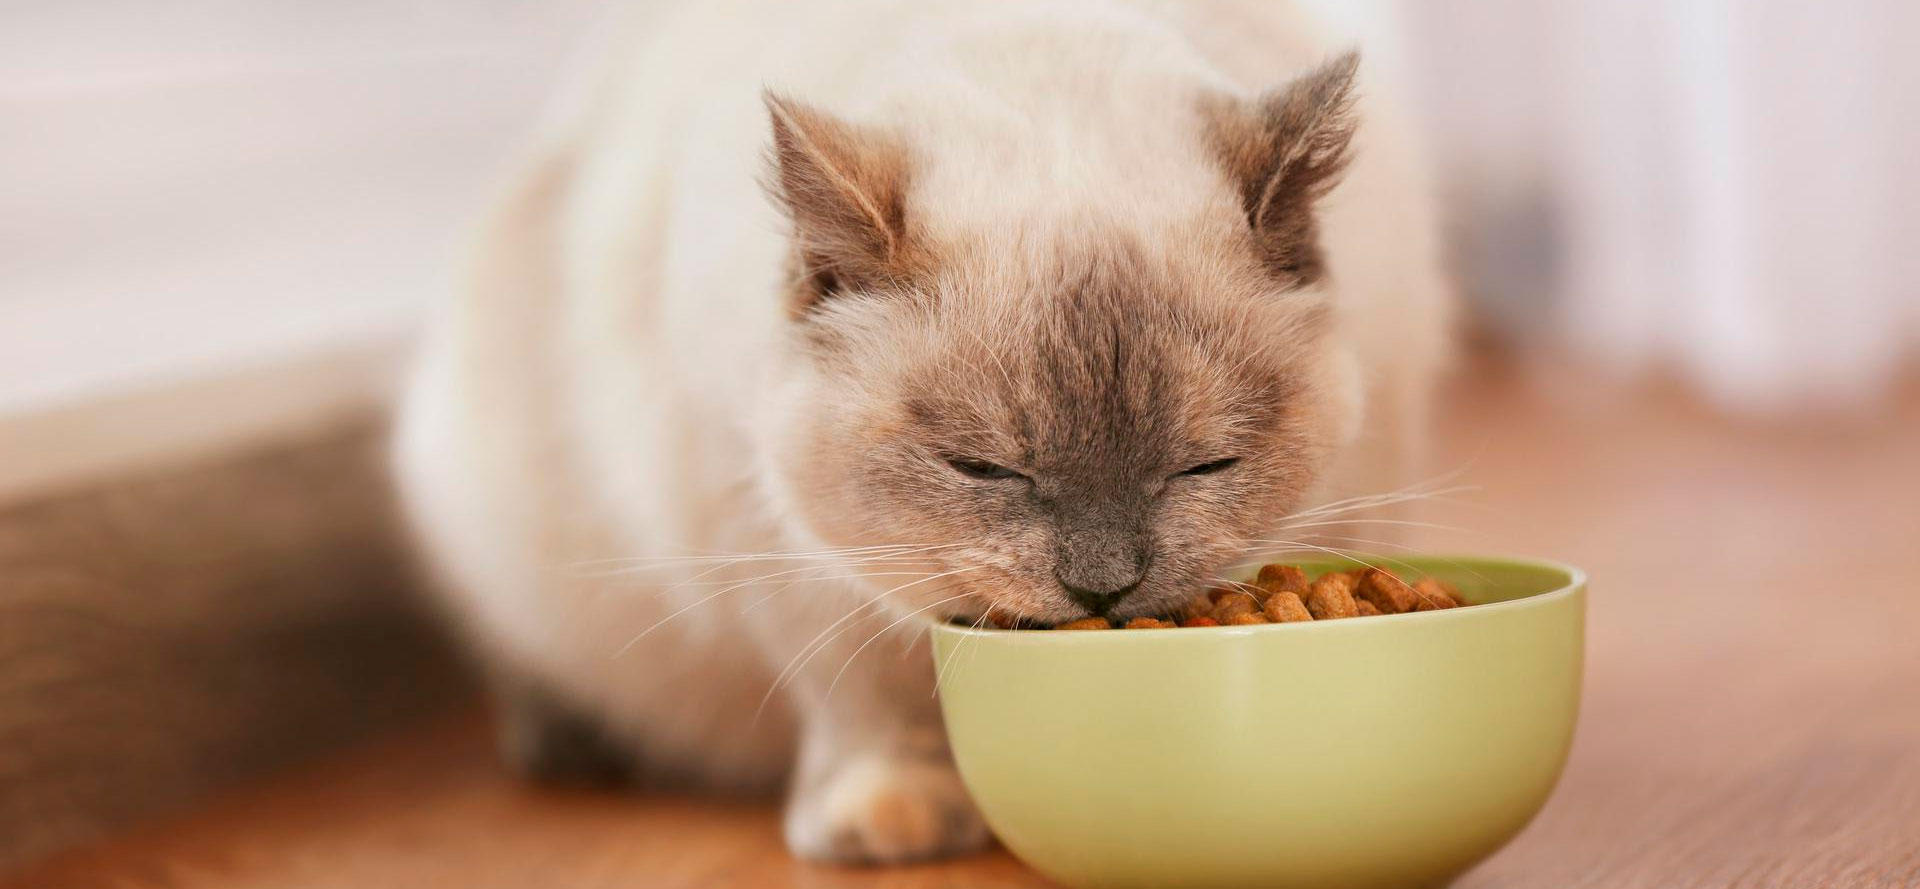 Cat and grain-free cat food in green bowl.